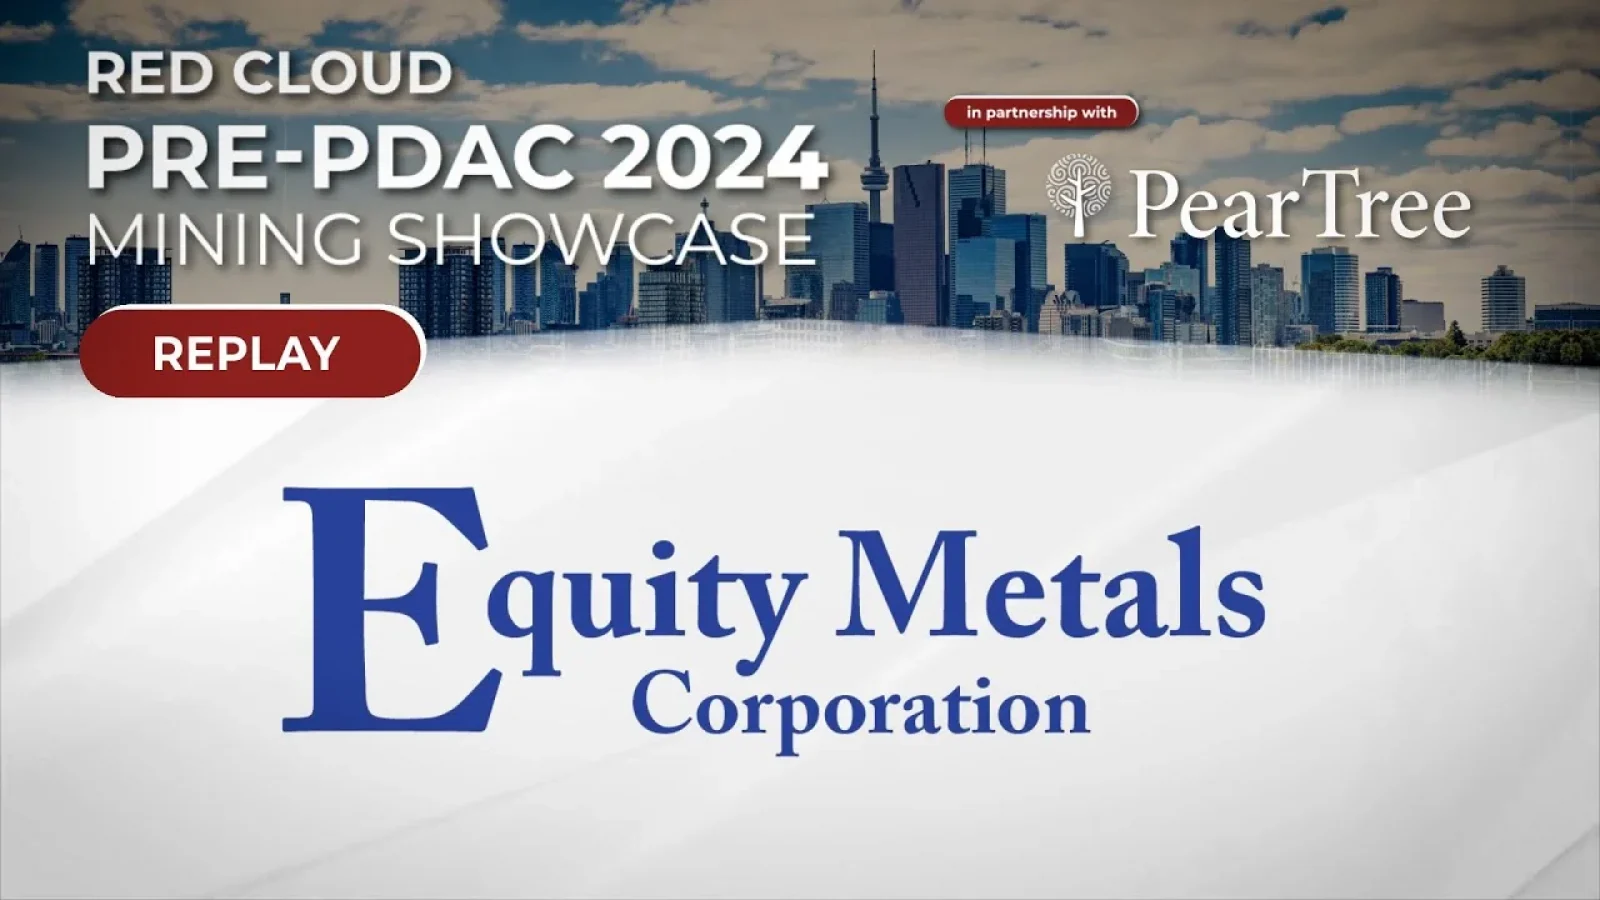 Equity Metals